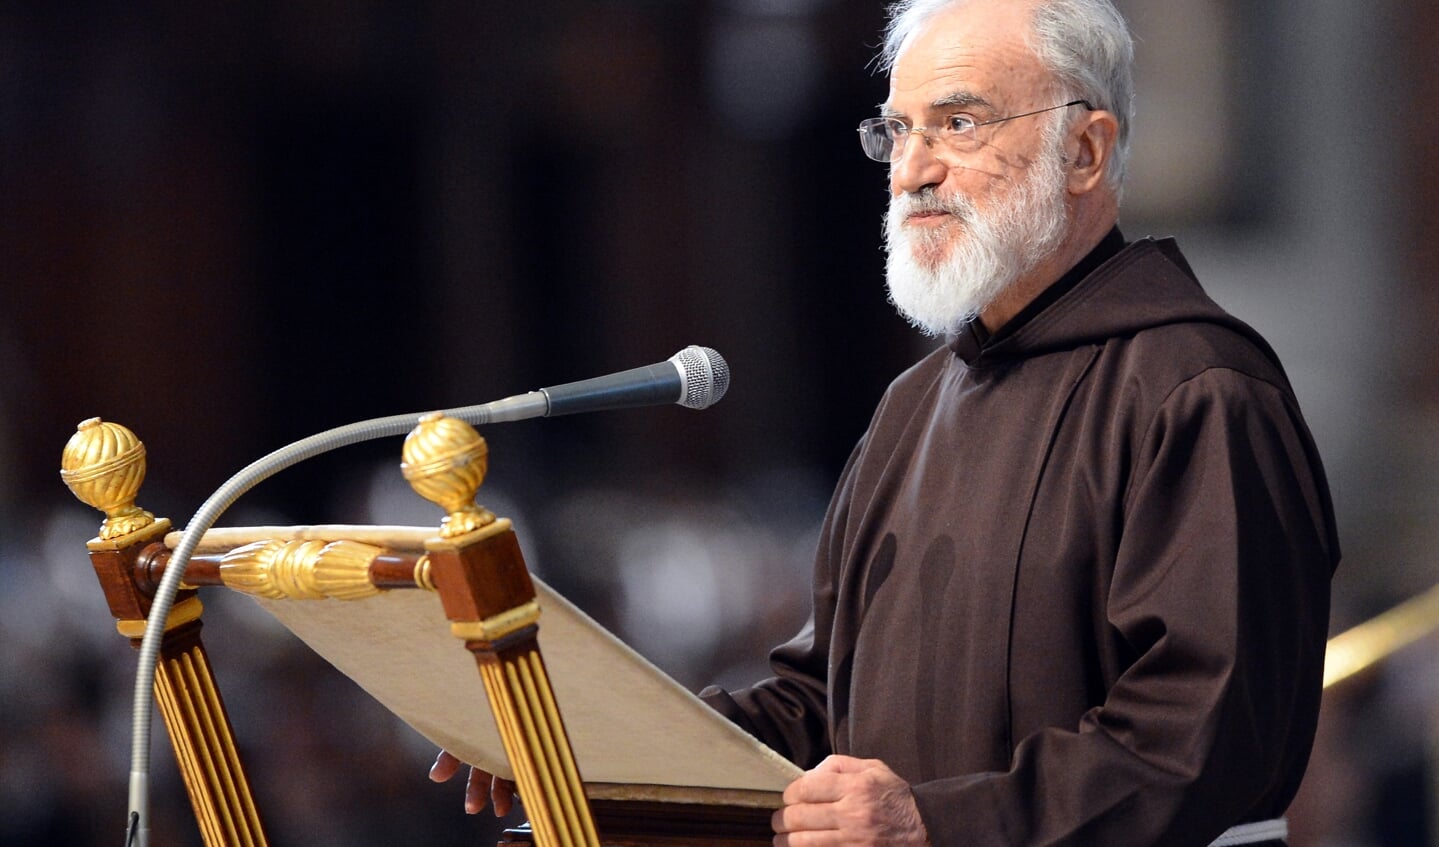 De kapucijnerpater Raniero Cantalamessa tijdens zijn preek op Goede Vrijdag van 2012 in de hoedanigheid van prediker van het Pauselijk Huis. 